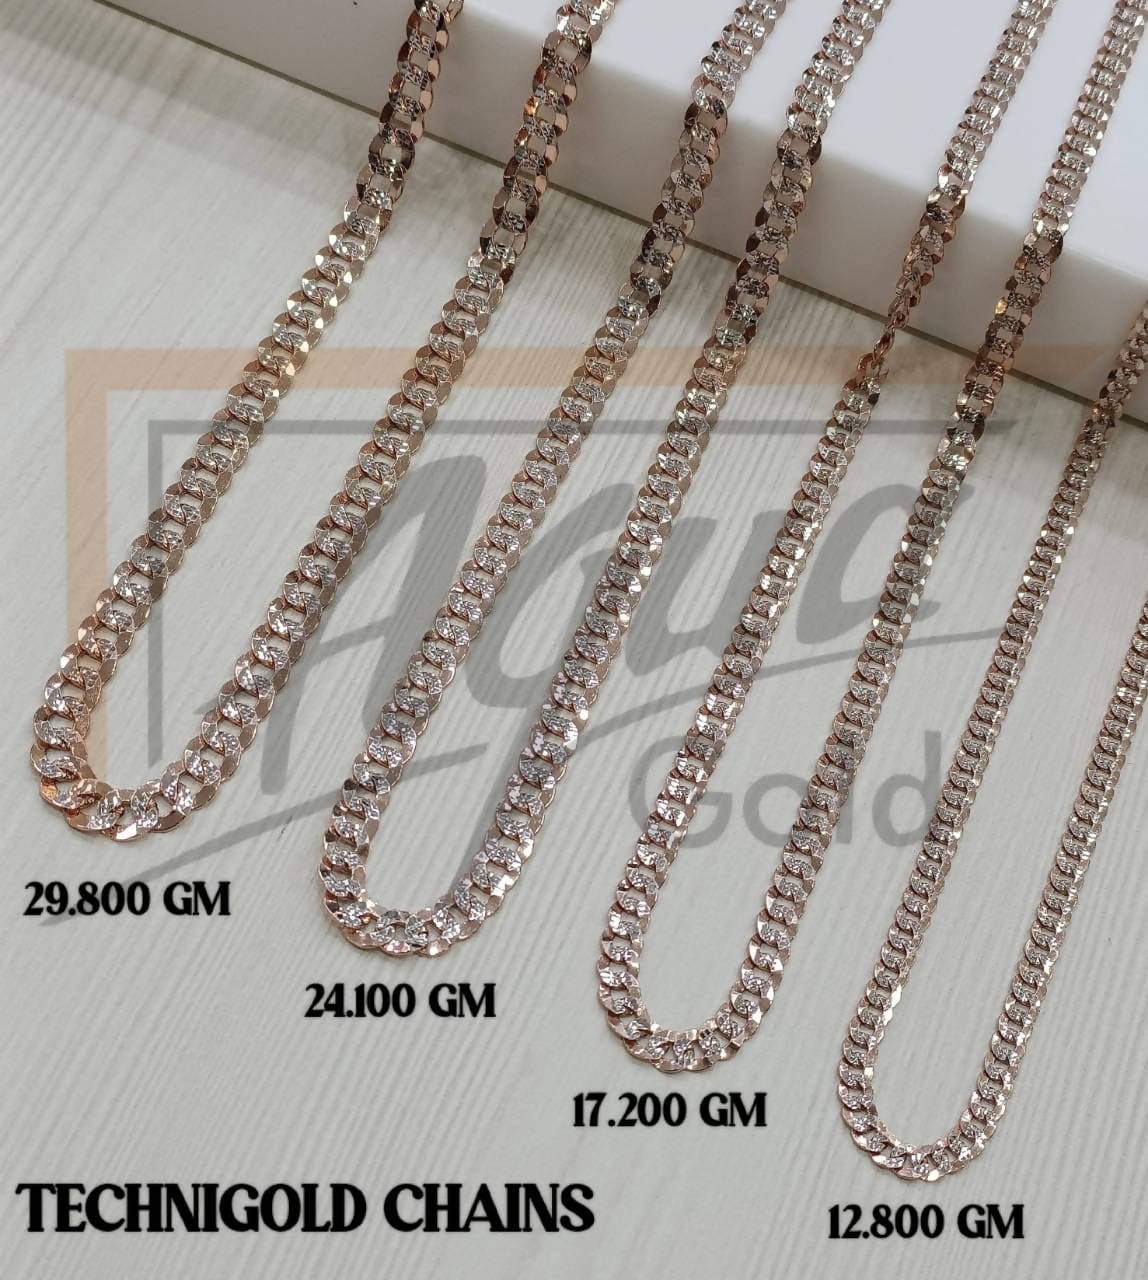 18Kt Technigold Chains Sarafa Bazar India